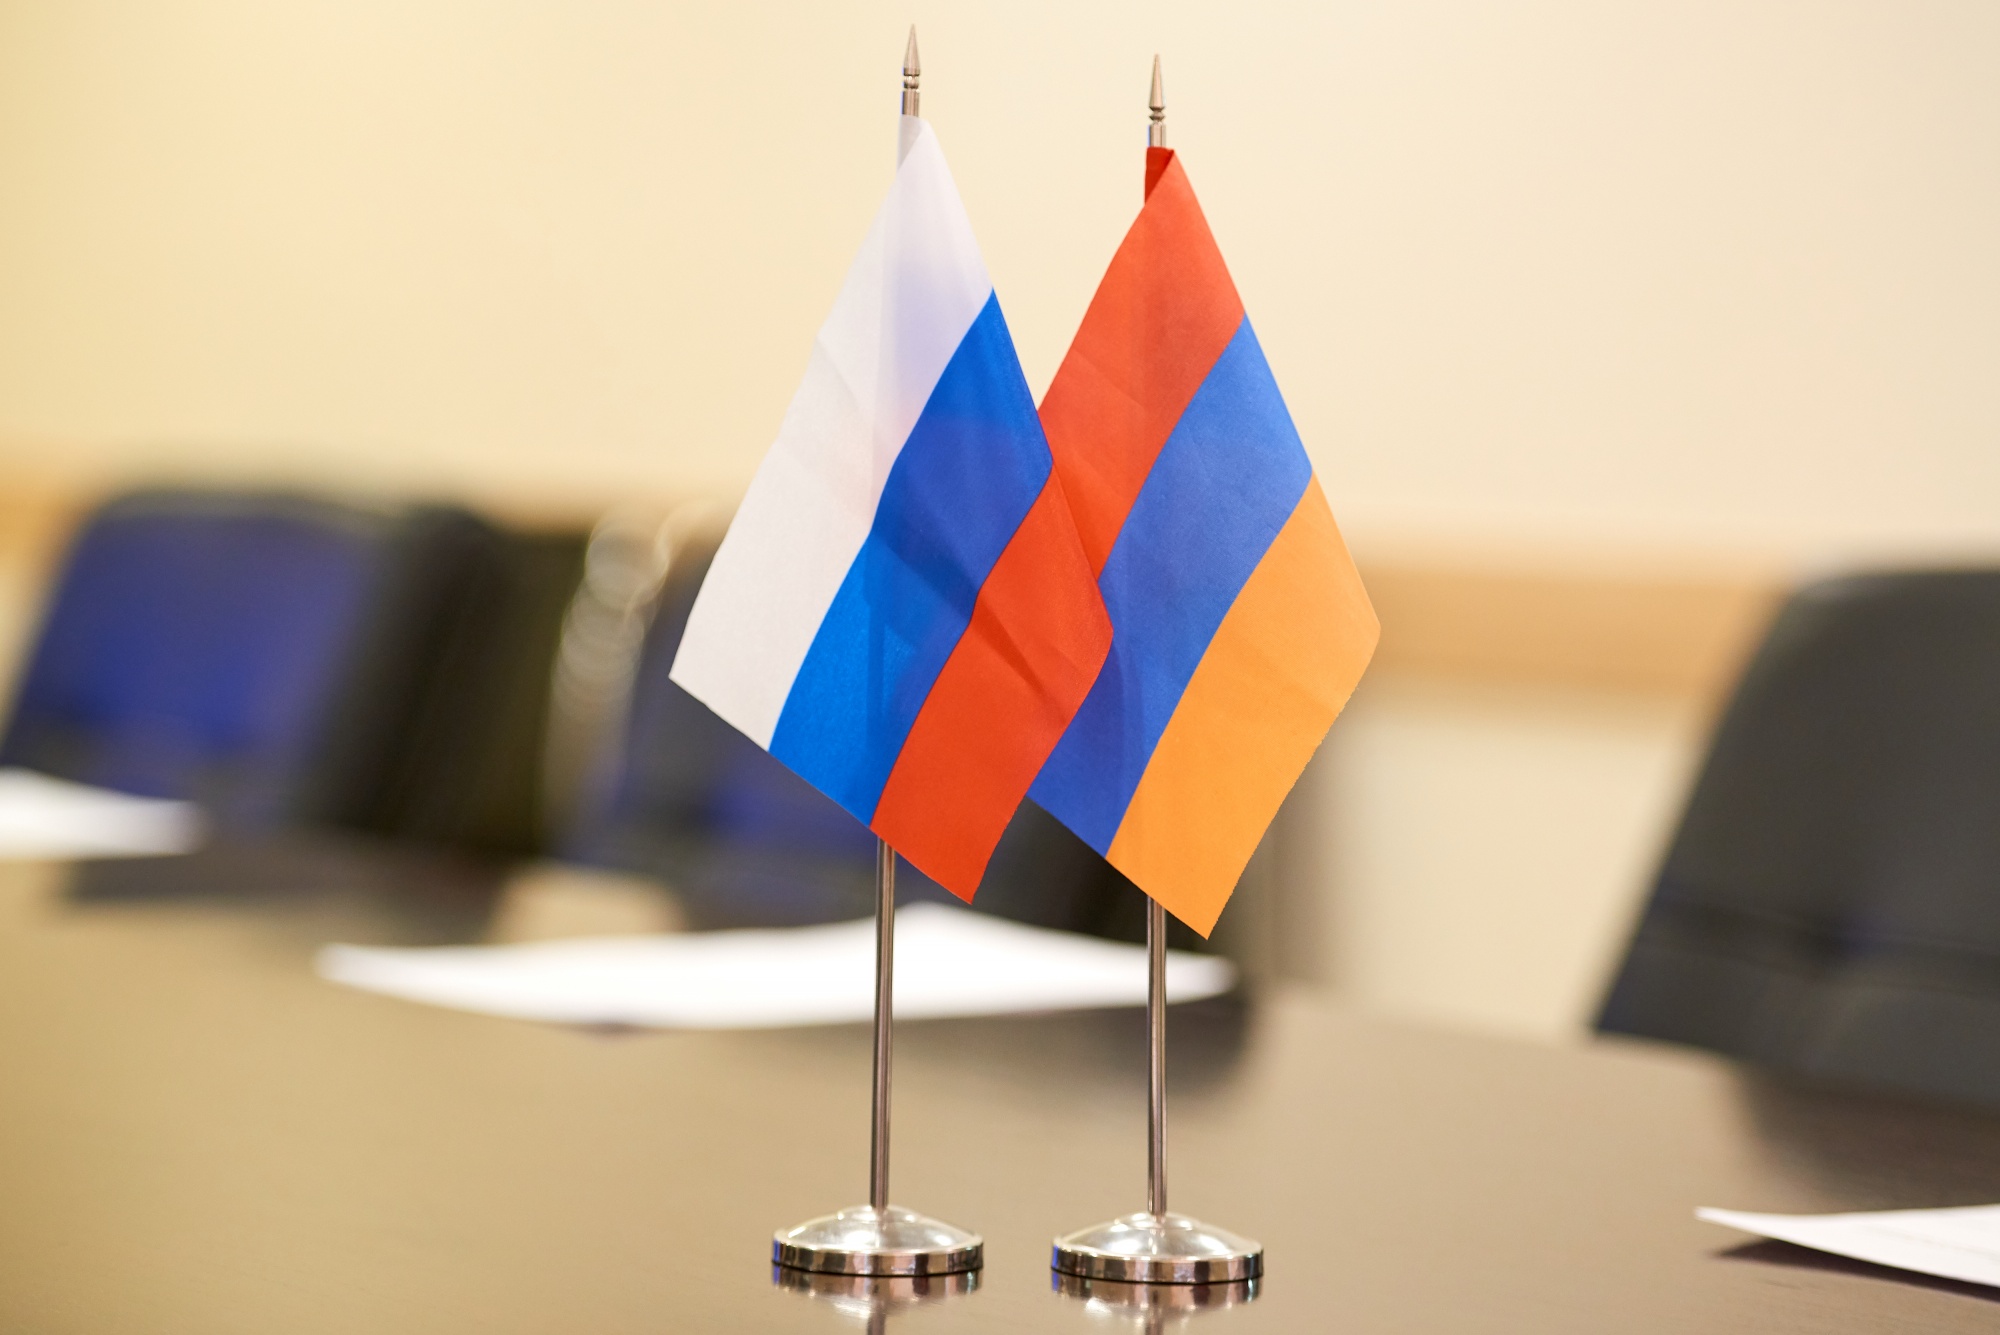 ՌԴ և ՀՀ ԱԳ նախարարները դեկտեմբերի 7-ին կքննարկեն ԼՂ հարցով հայտարարության իրականացումը